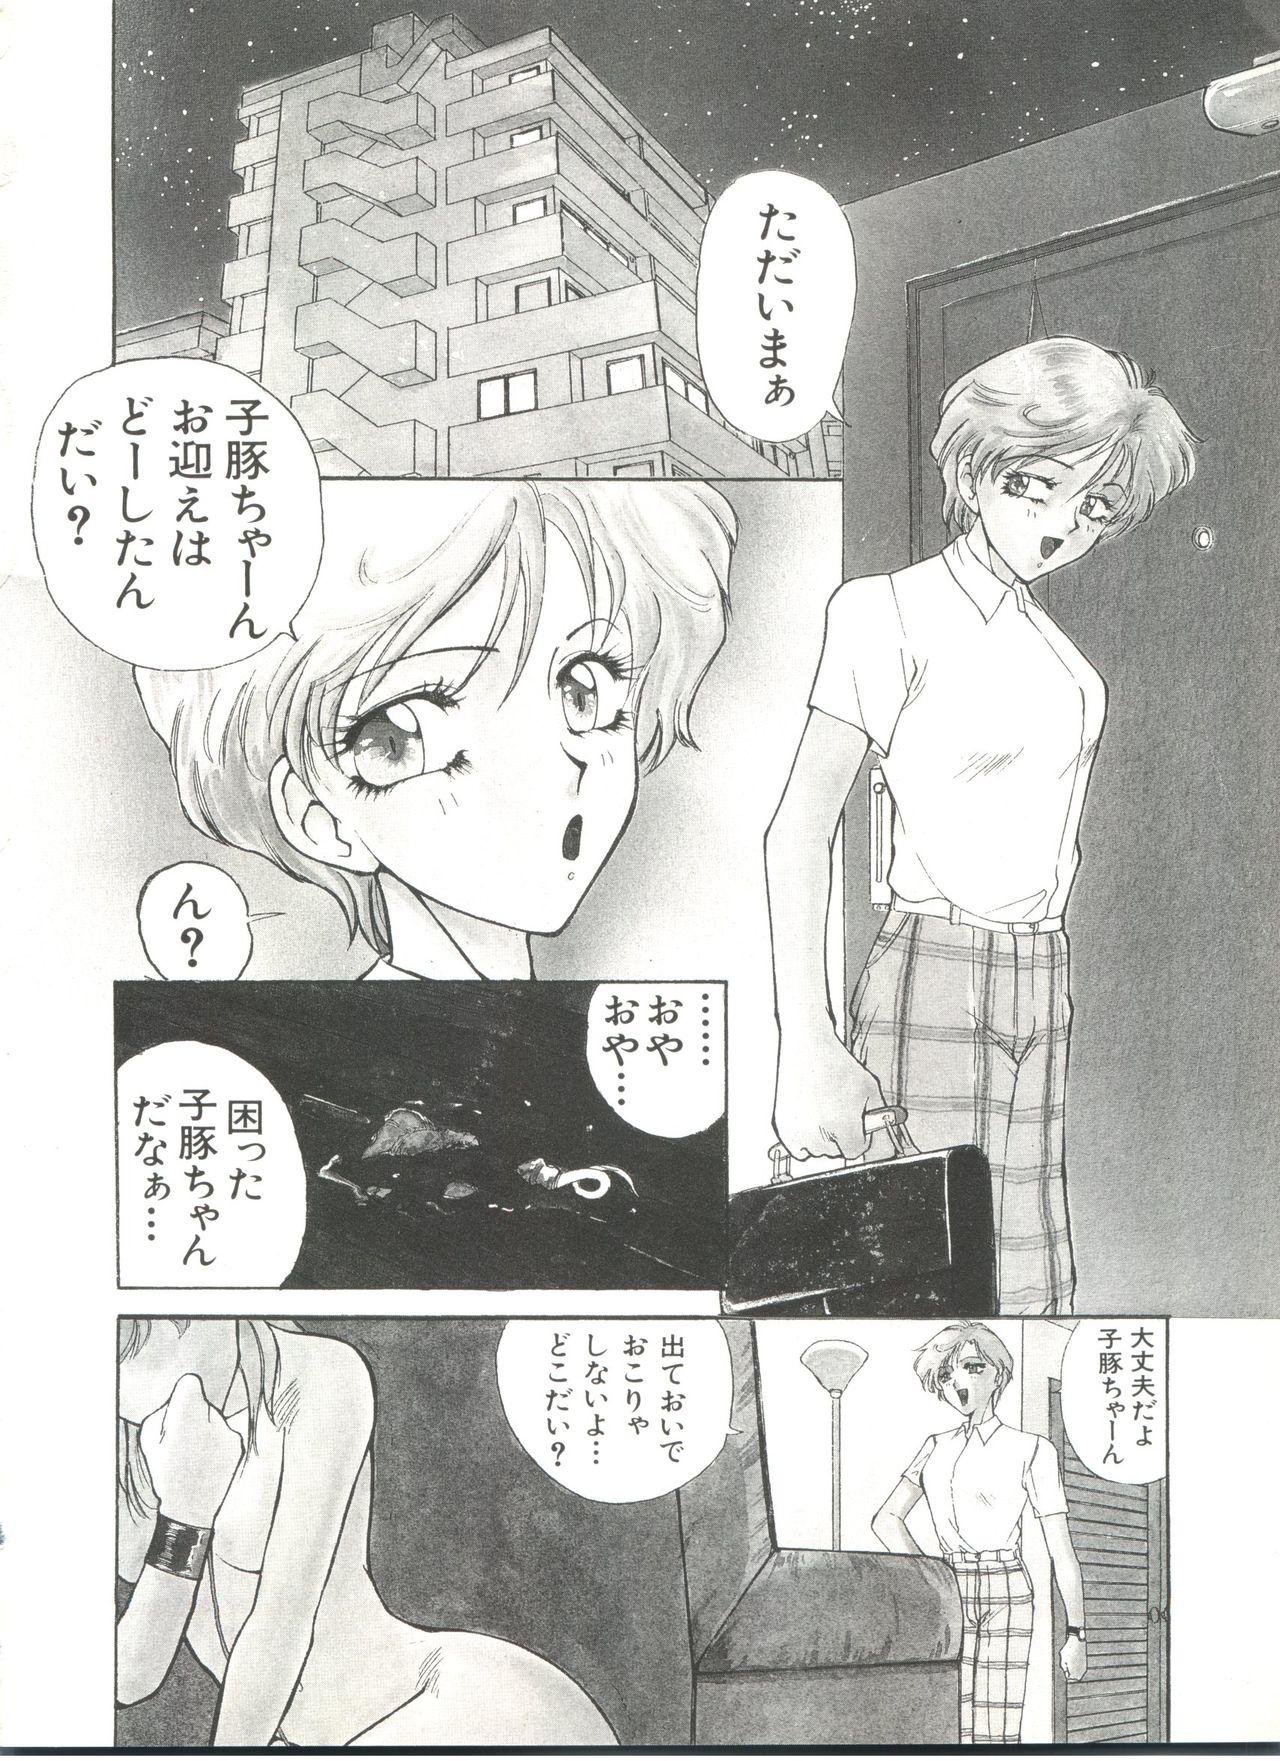 Bishoujo Doujinshi Anthology 15 - Moon Paradise 9 Tsuki no Rakuen 41